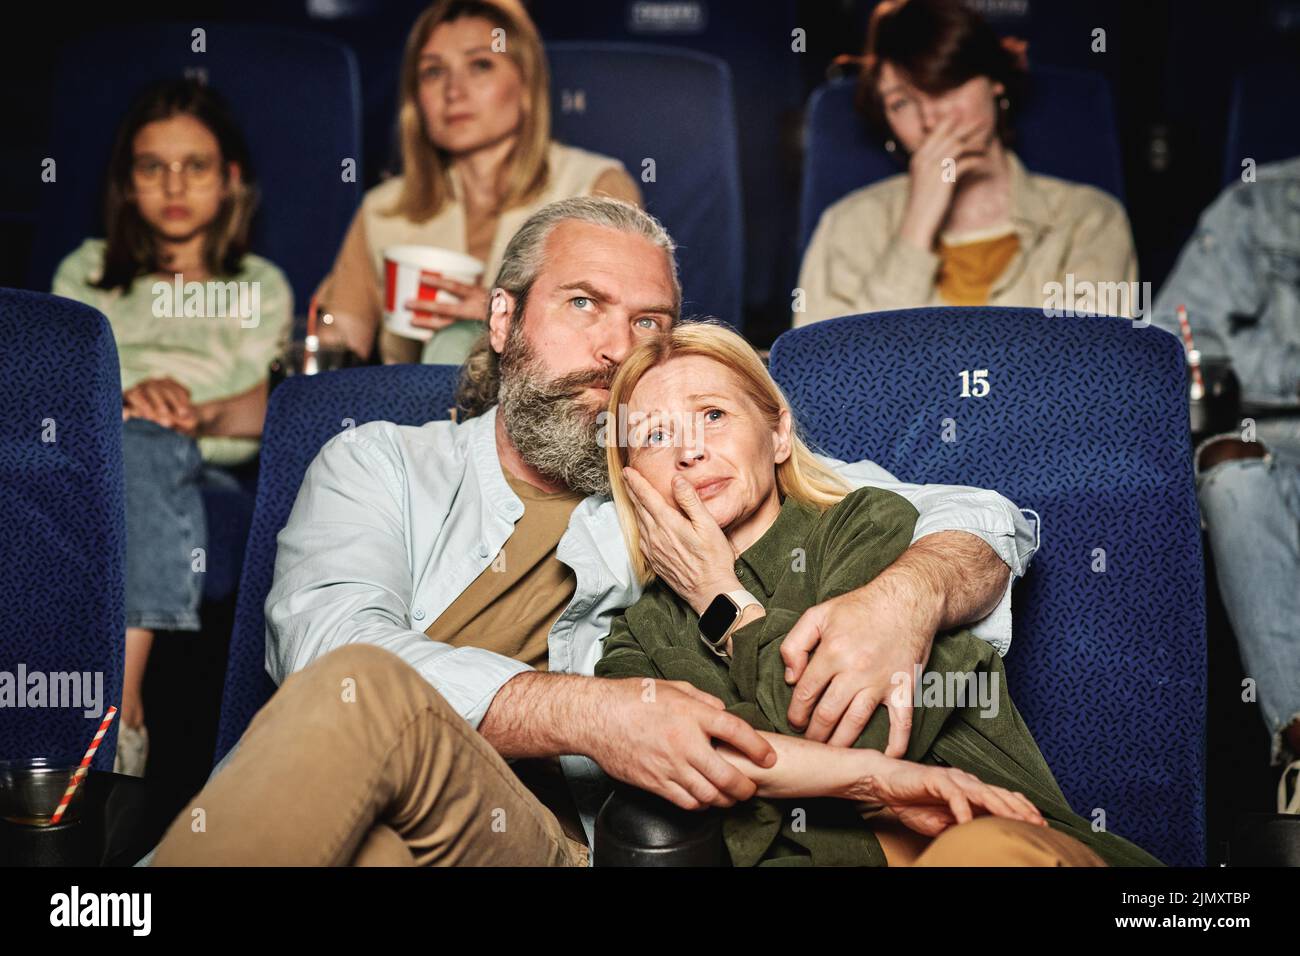 Plano horizontal de un hombre caucásico reconfortante a su esposa mientras ve una película de tragedia en el cine Foto de stock